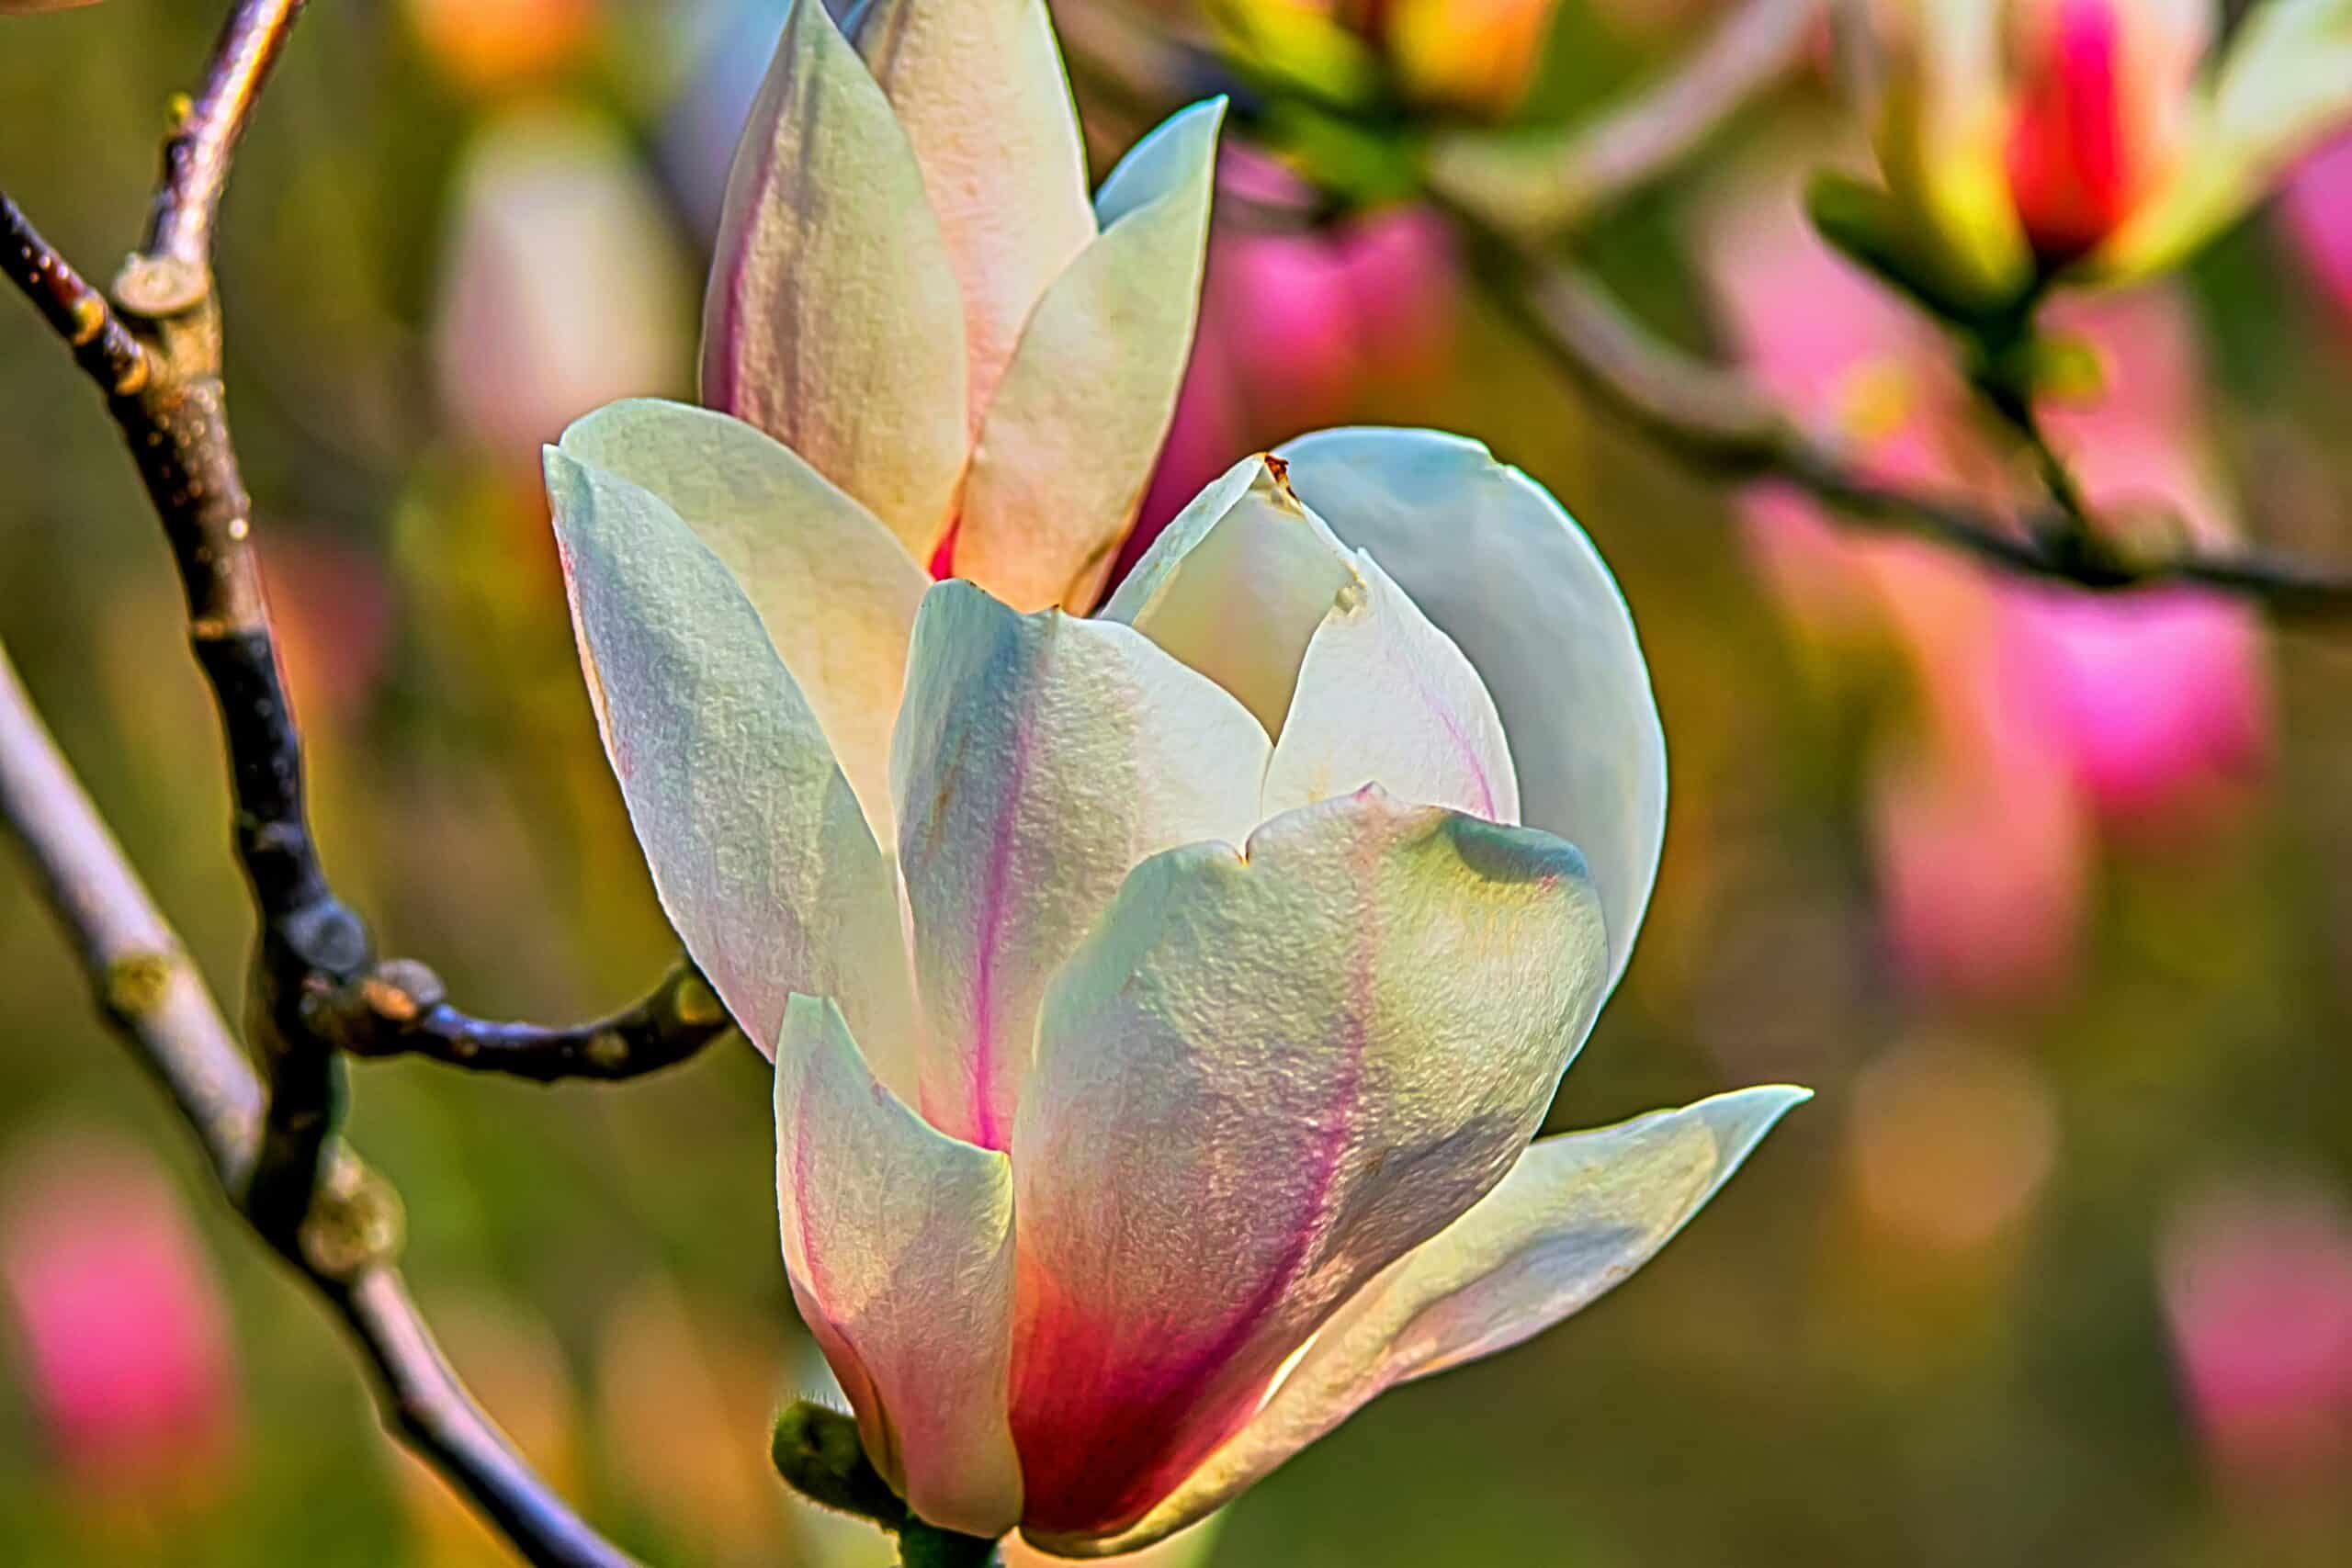 scopri la bellezza degli alberi di magnolia con le loro splendide fioriture e la loro impressionante statura. scopri le diverse varietà, i consigli per piantare e le tecniche di cura per questi iconici alberi in fiore.